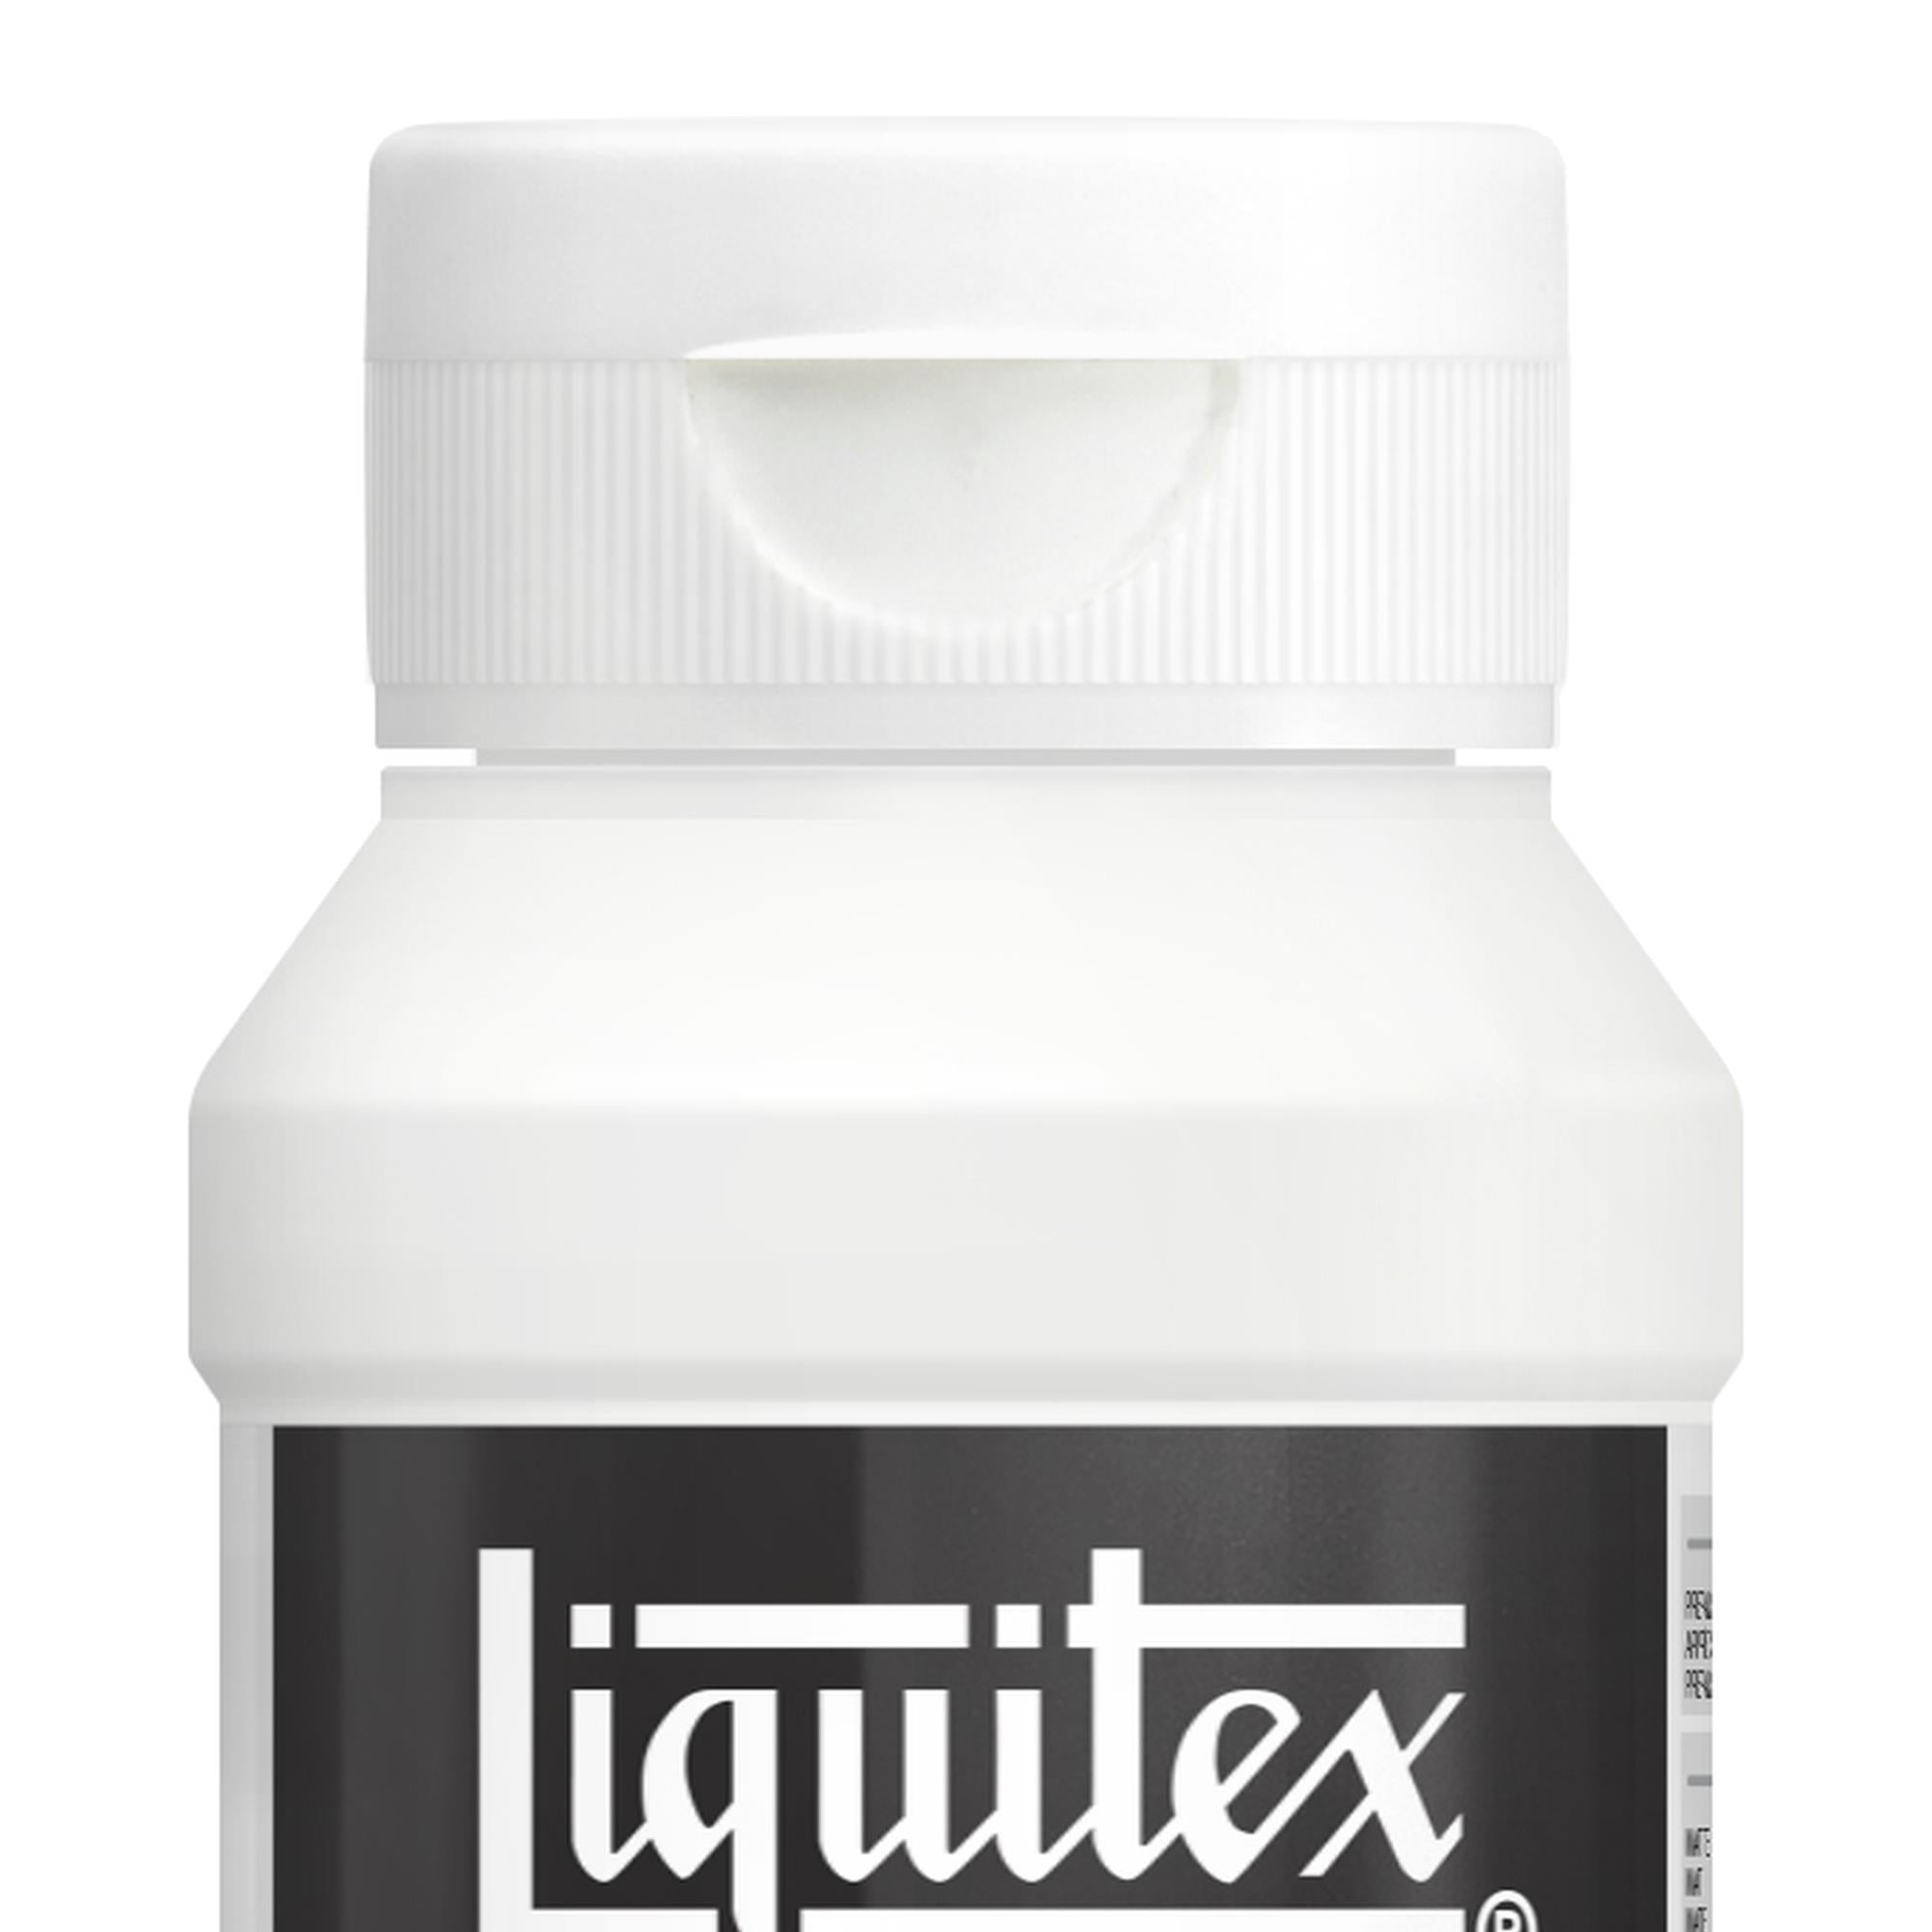 Liquitex - Fabric Medium 118ml